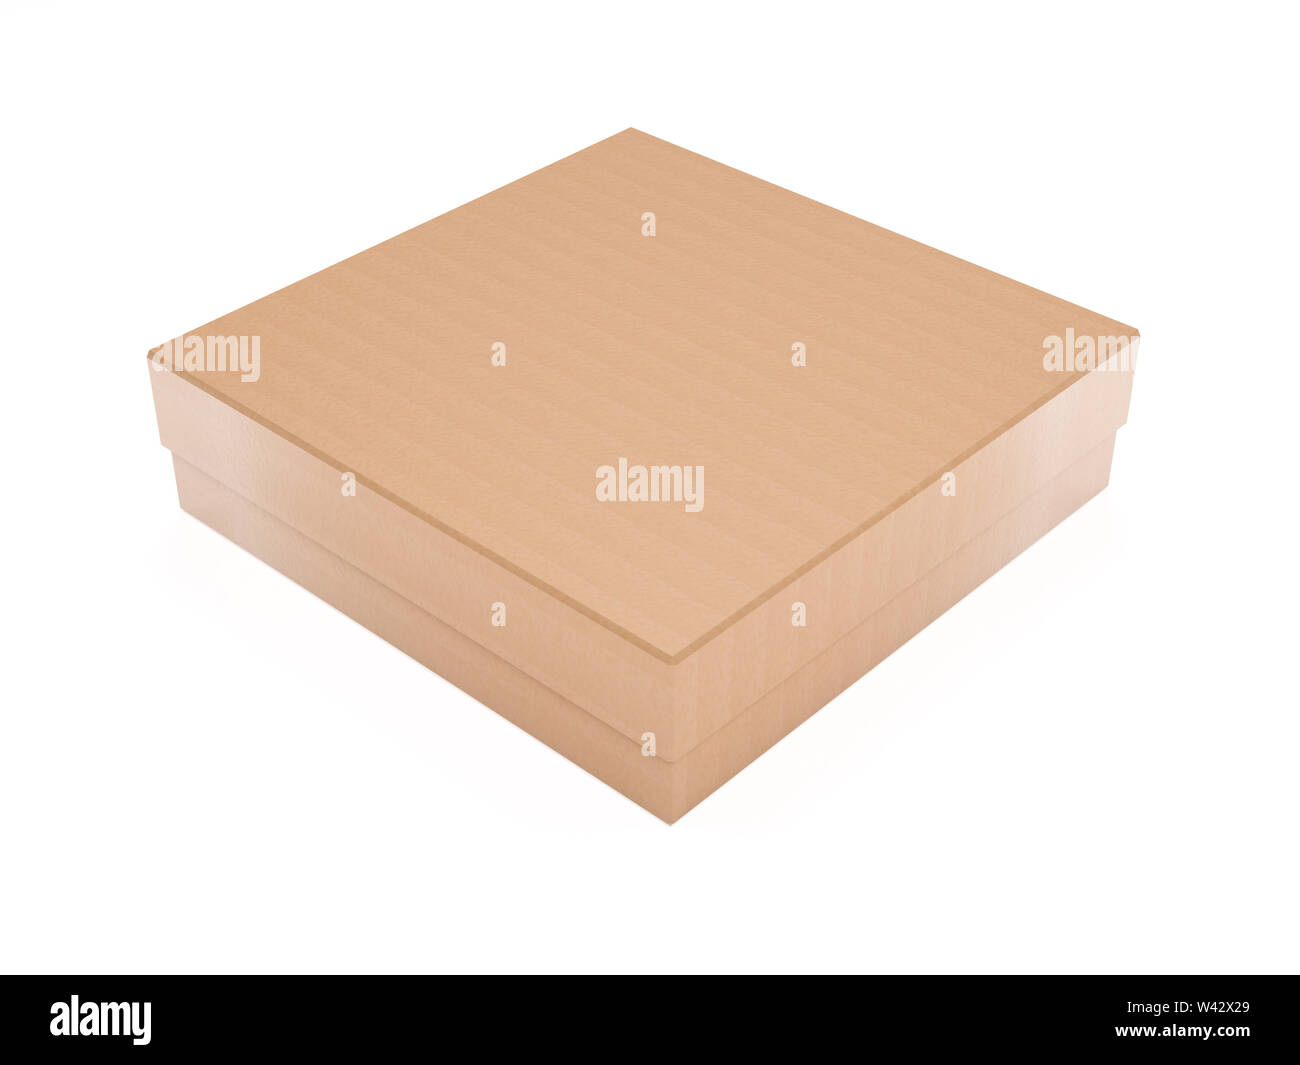 Boîte à pizza. Boîte de carton ondulé brun. Le rendu 3d illustration isolé sur fond blanc Banque D'Images